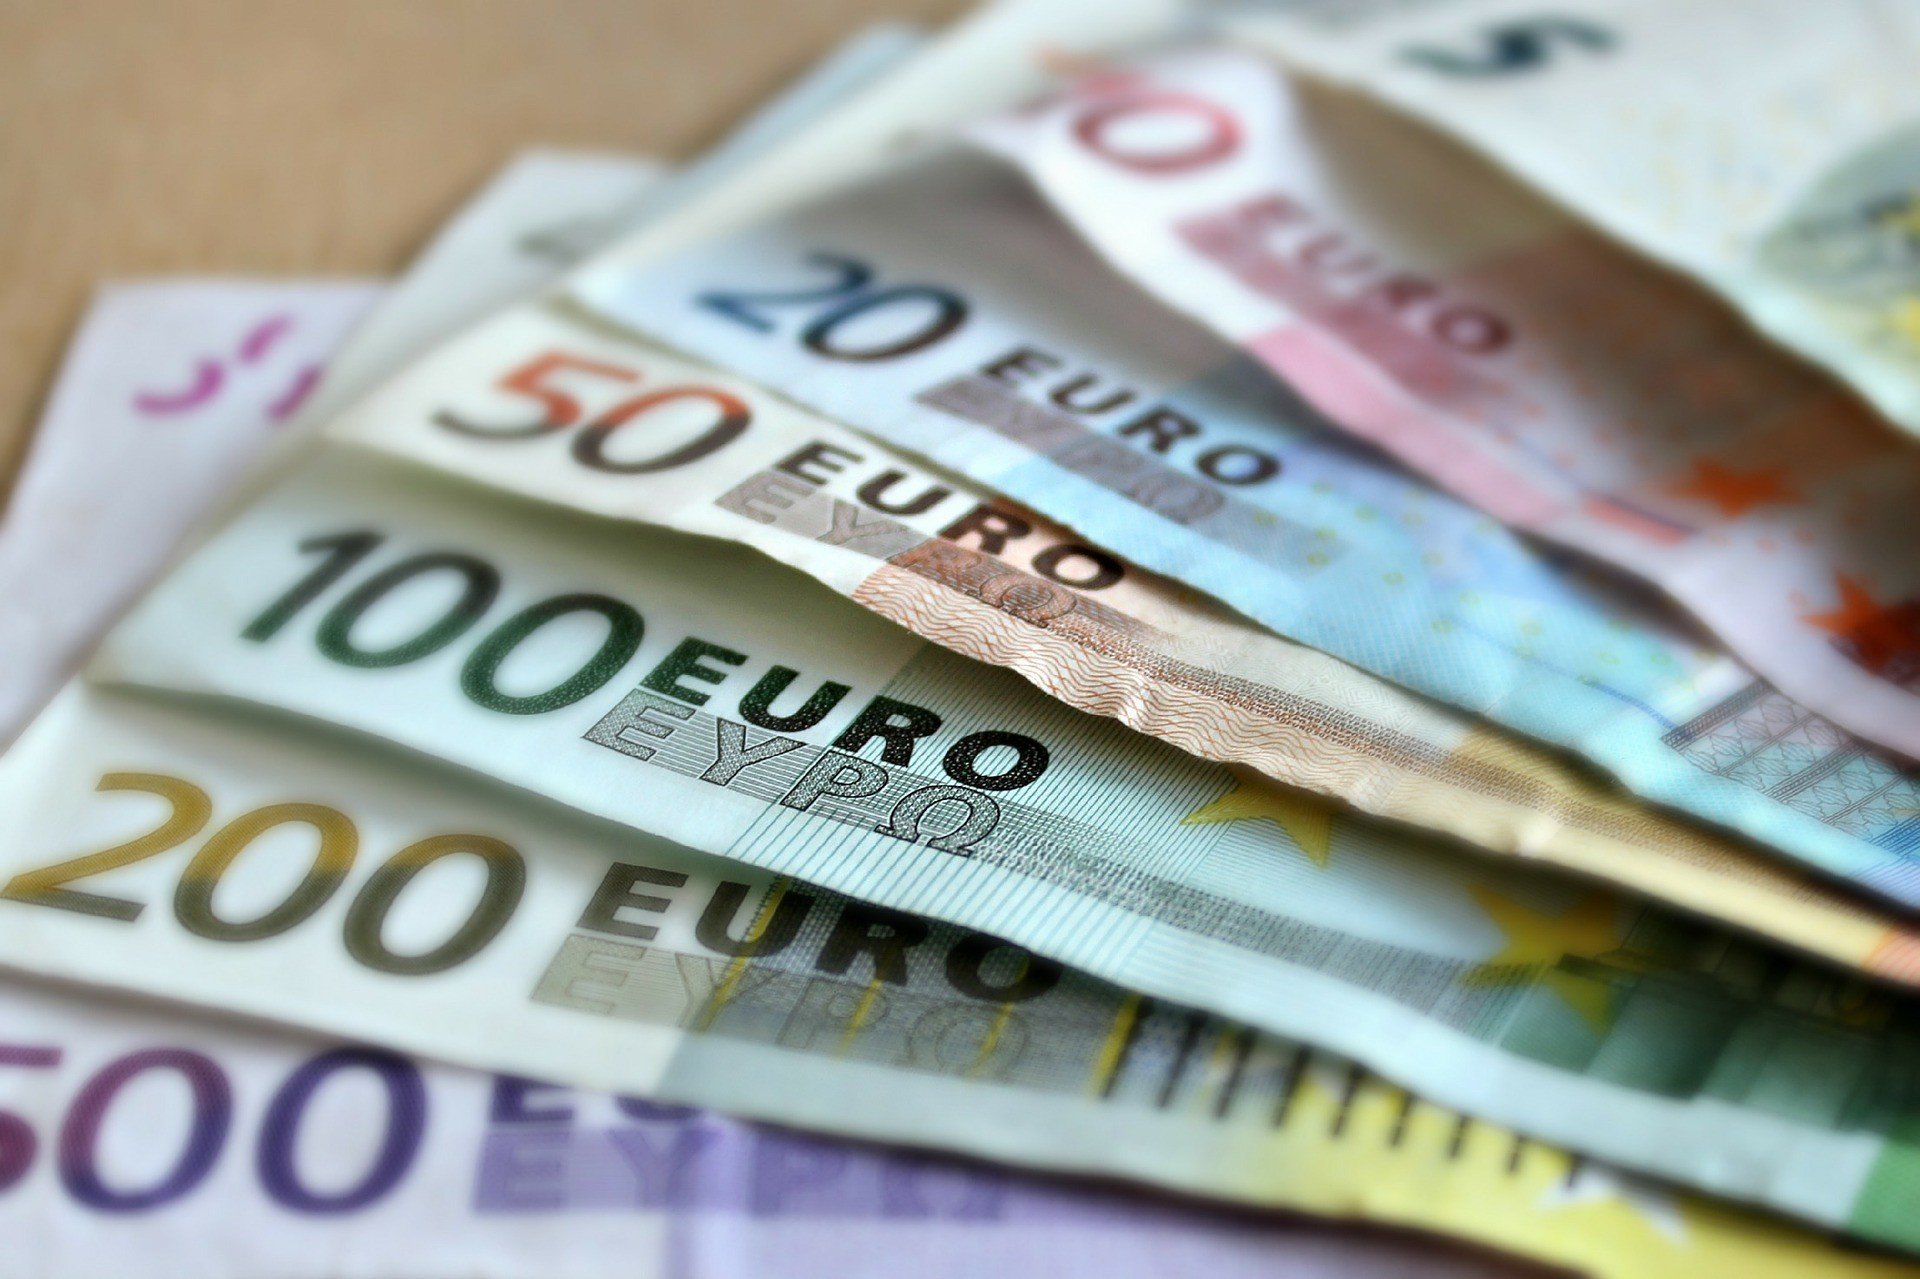 Лучшие депозиты в евро сроком на 9 месяцев